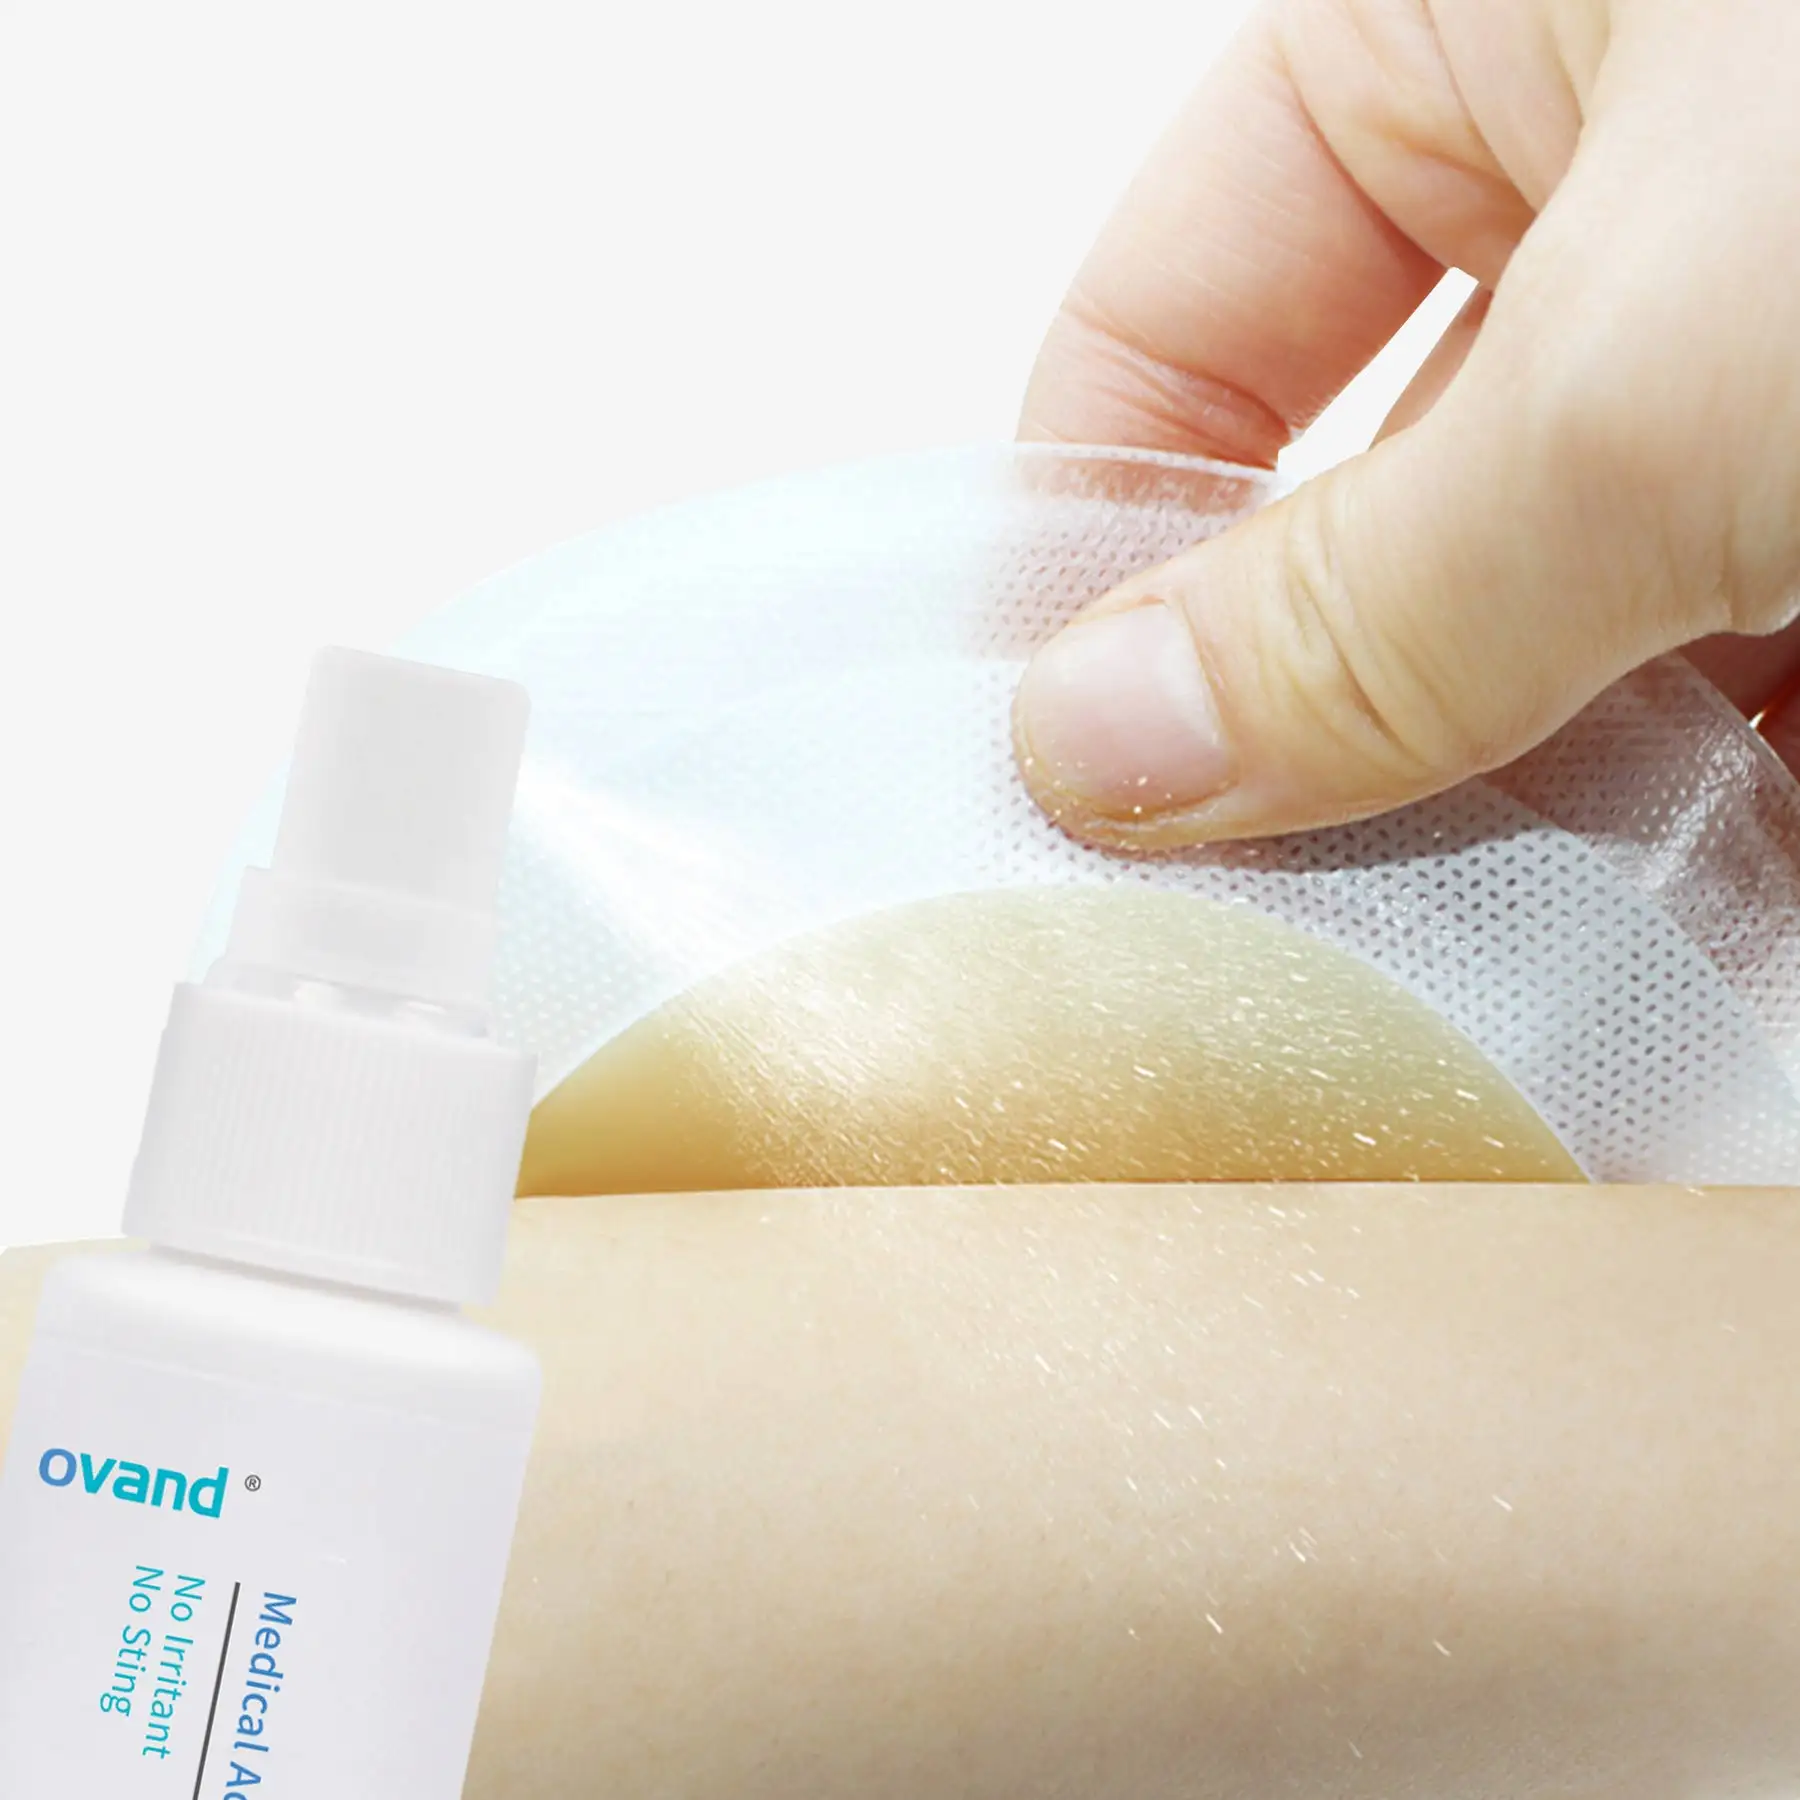 Ovand039 Medische Lijm Verwijderaar Spray Voor Huid Huidvriendelijke Stoma Lijmverwijderaar Spray